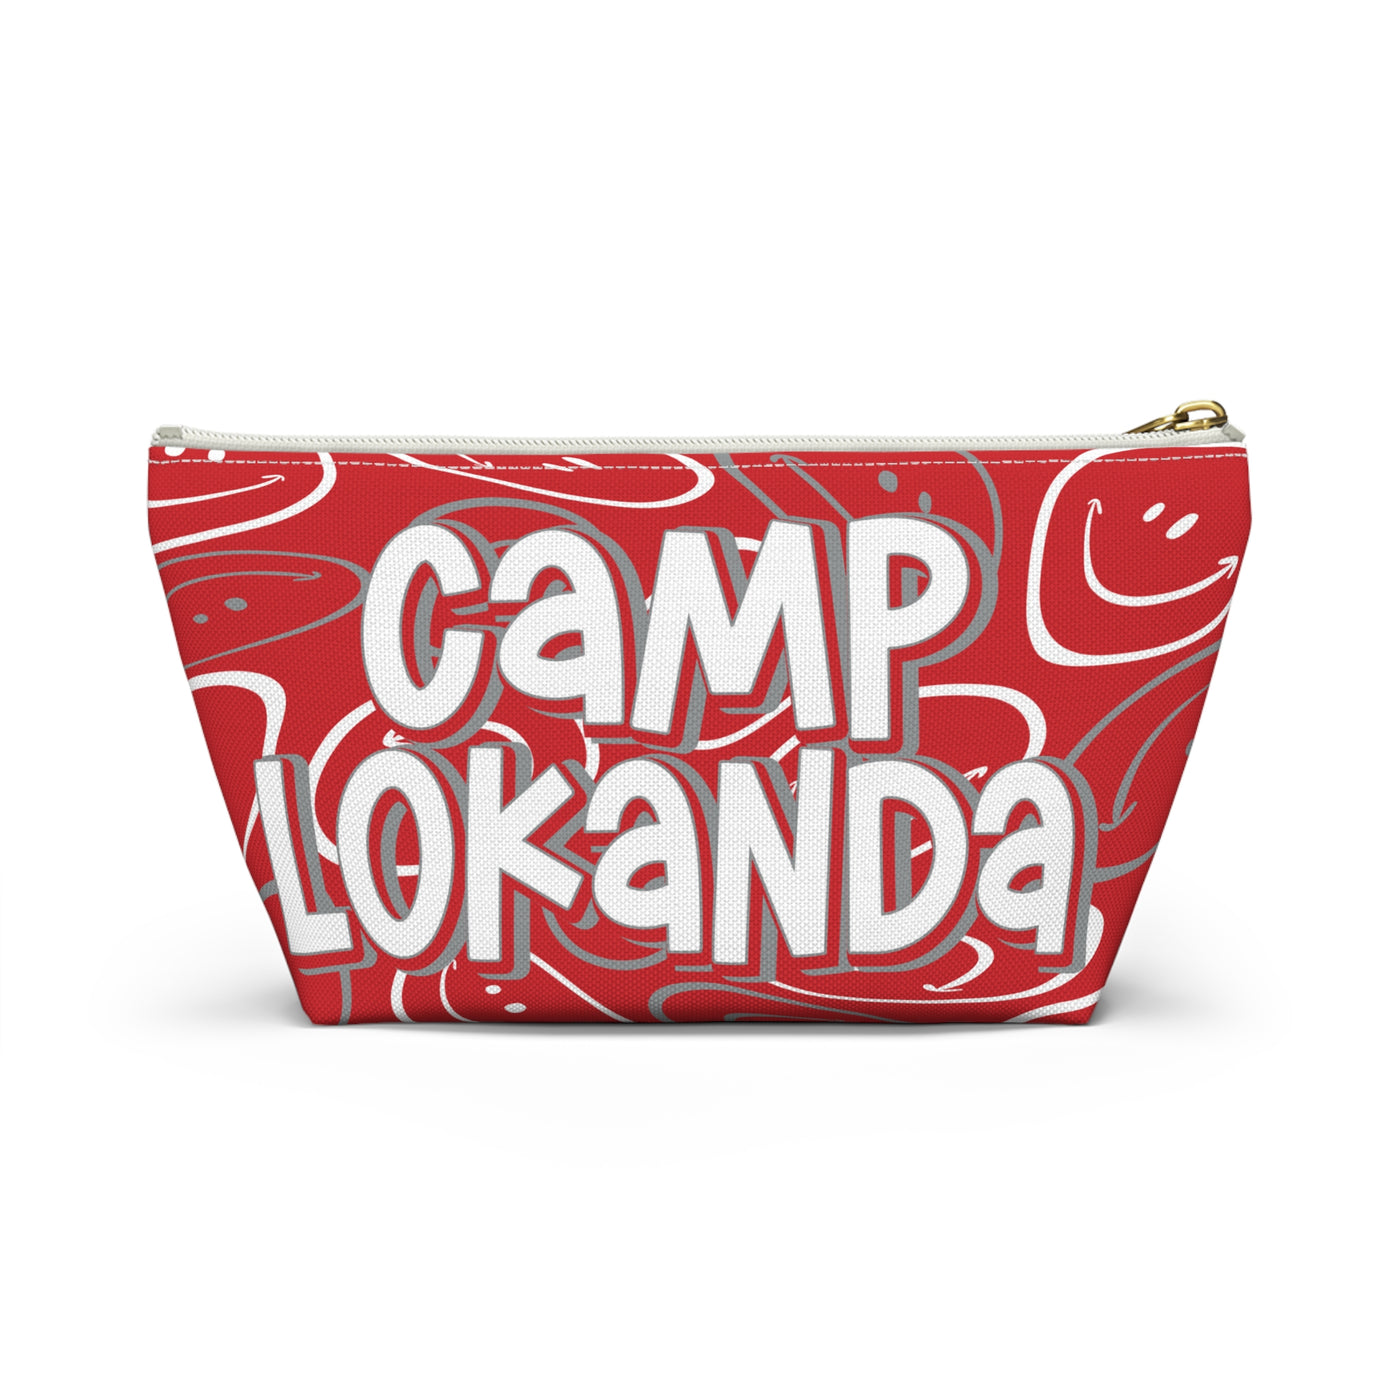 Camp Lokanda Two Sided Makeup Bag